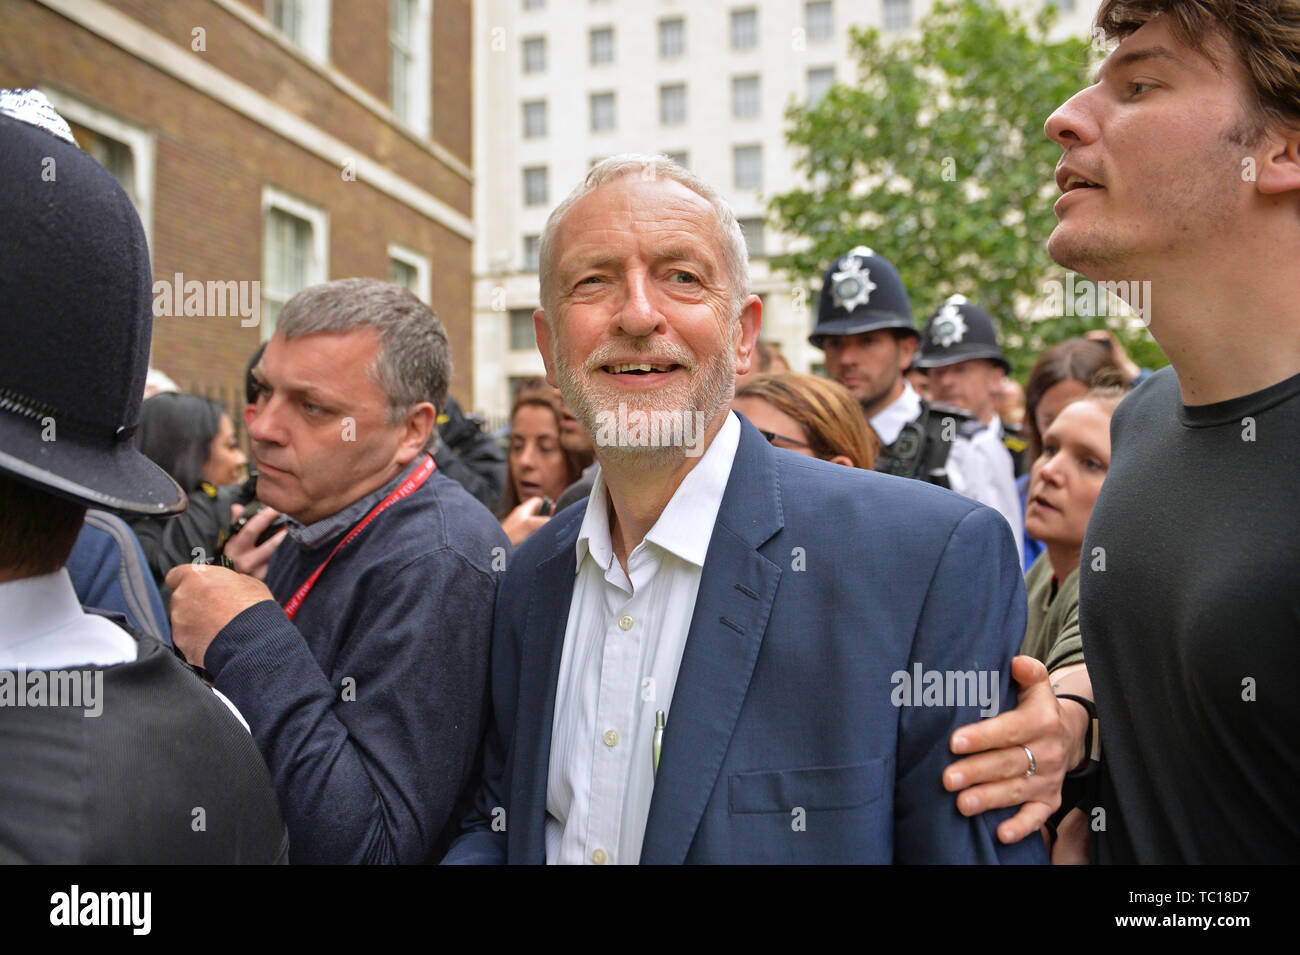 Dirigente del partido laborista Jerermy Corbyn llega a hablar en una manifestación anti-Trump en Whitehall, Londres en el segundo día de la visita de estado al Reino Unido por el Presidente de EEUU, Donald Trump. Foto de stock